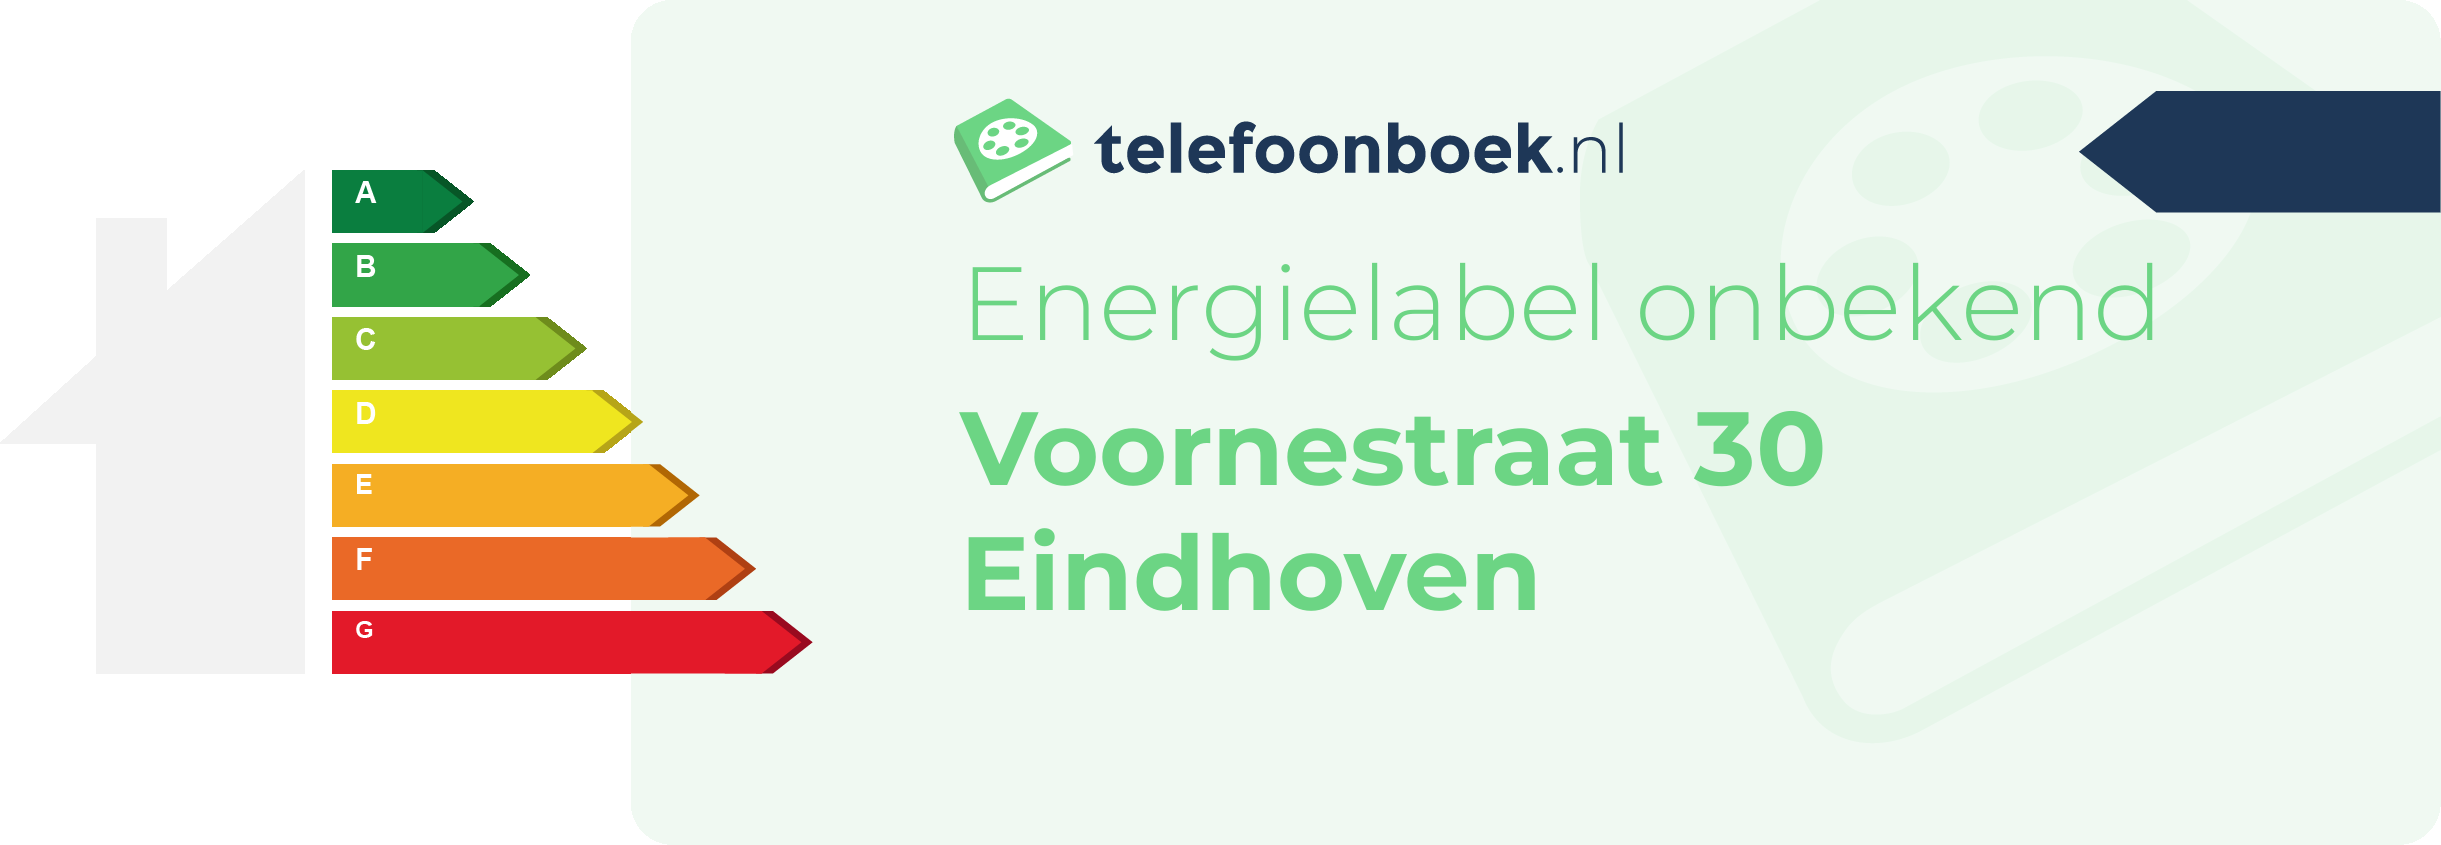 Energielabel Voornestraat 30 Eindhoven